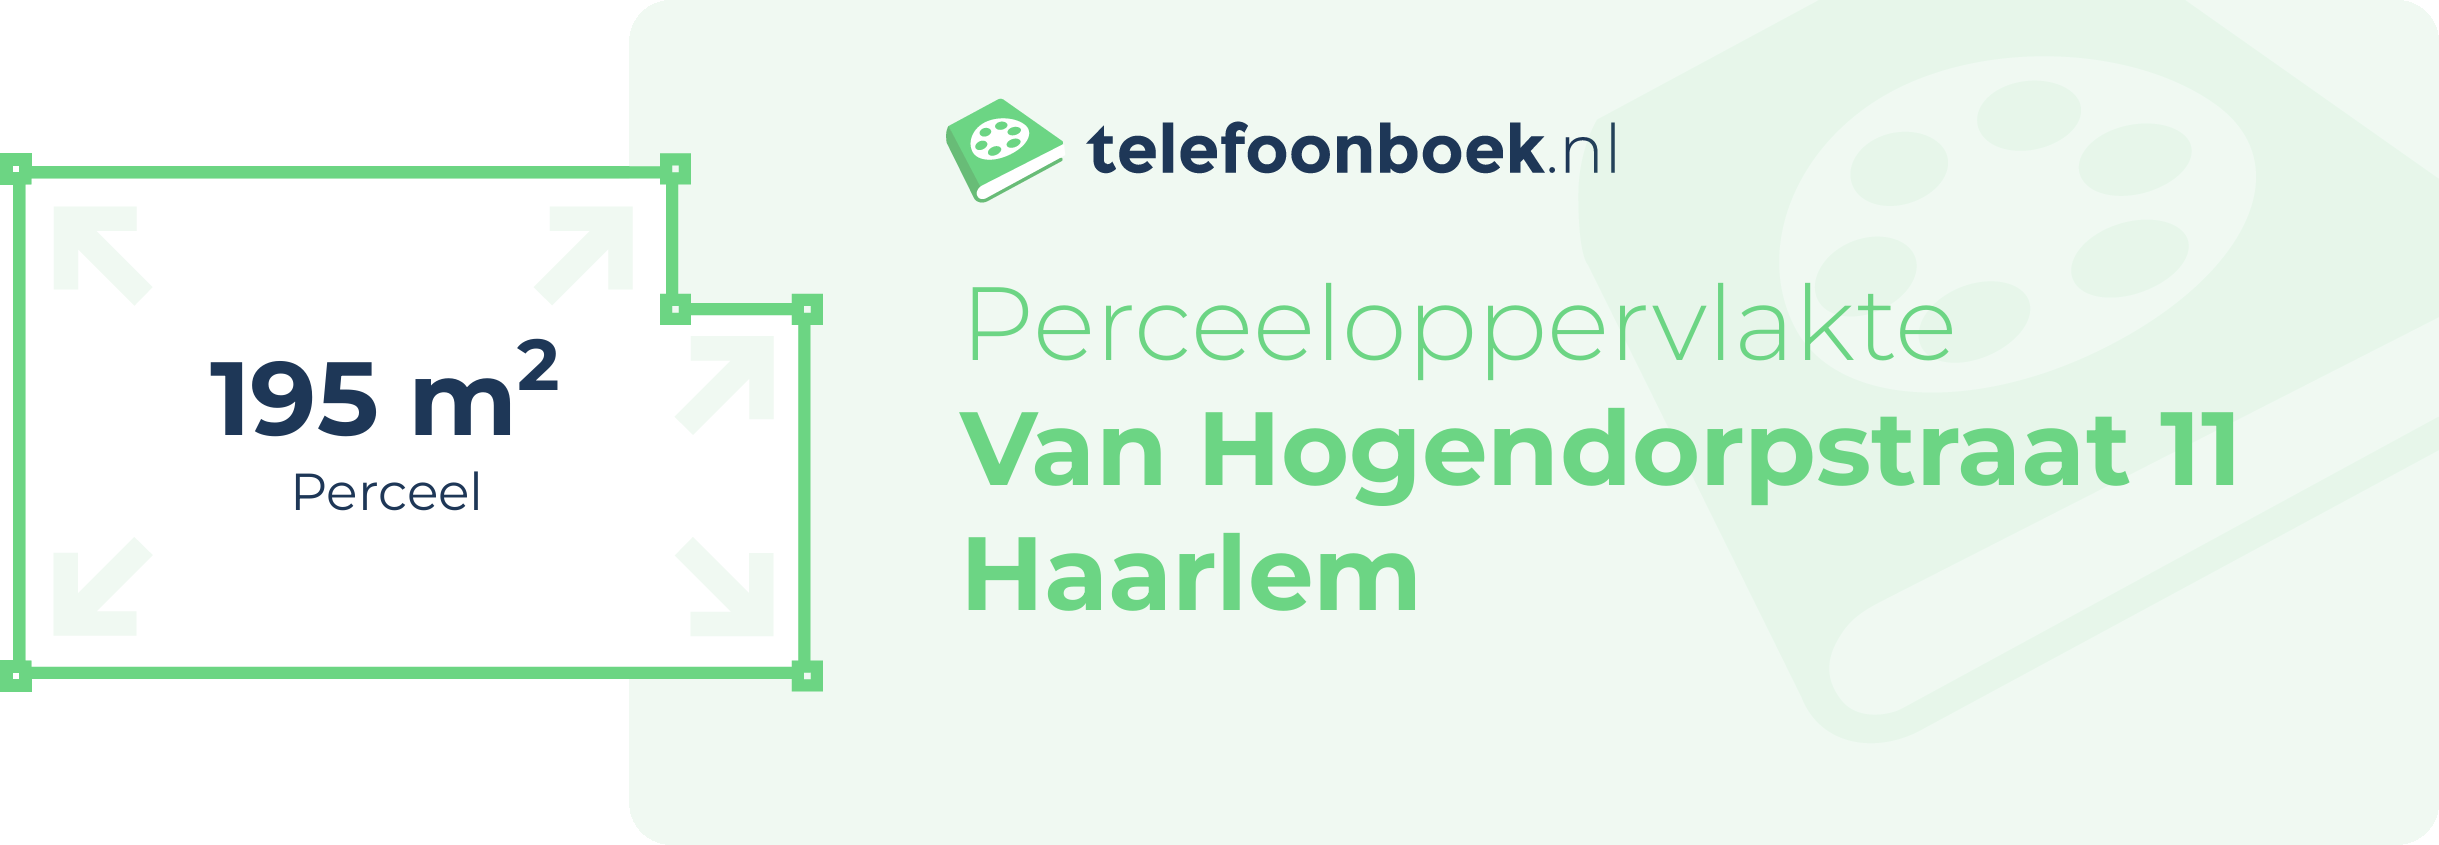 Perceeloppervlakte Van Hogendorpstraat 11 Haarlem